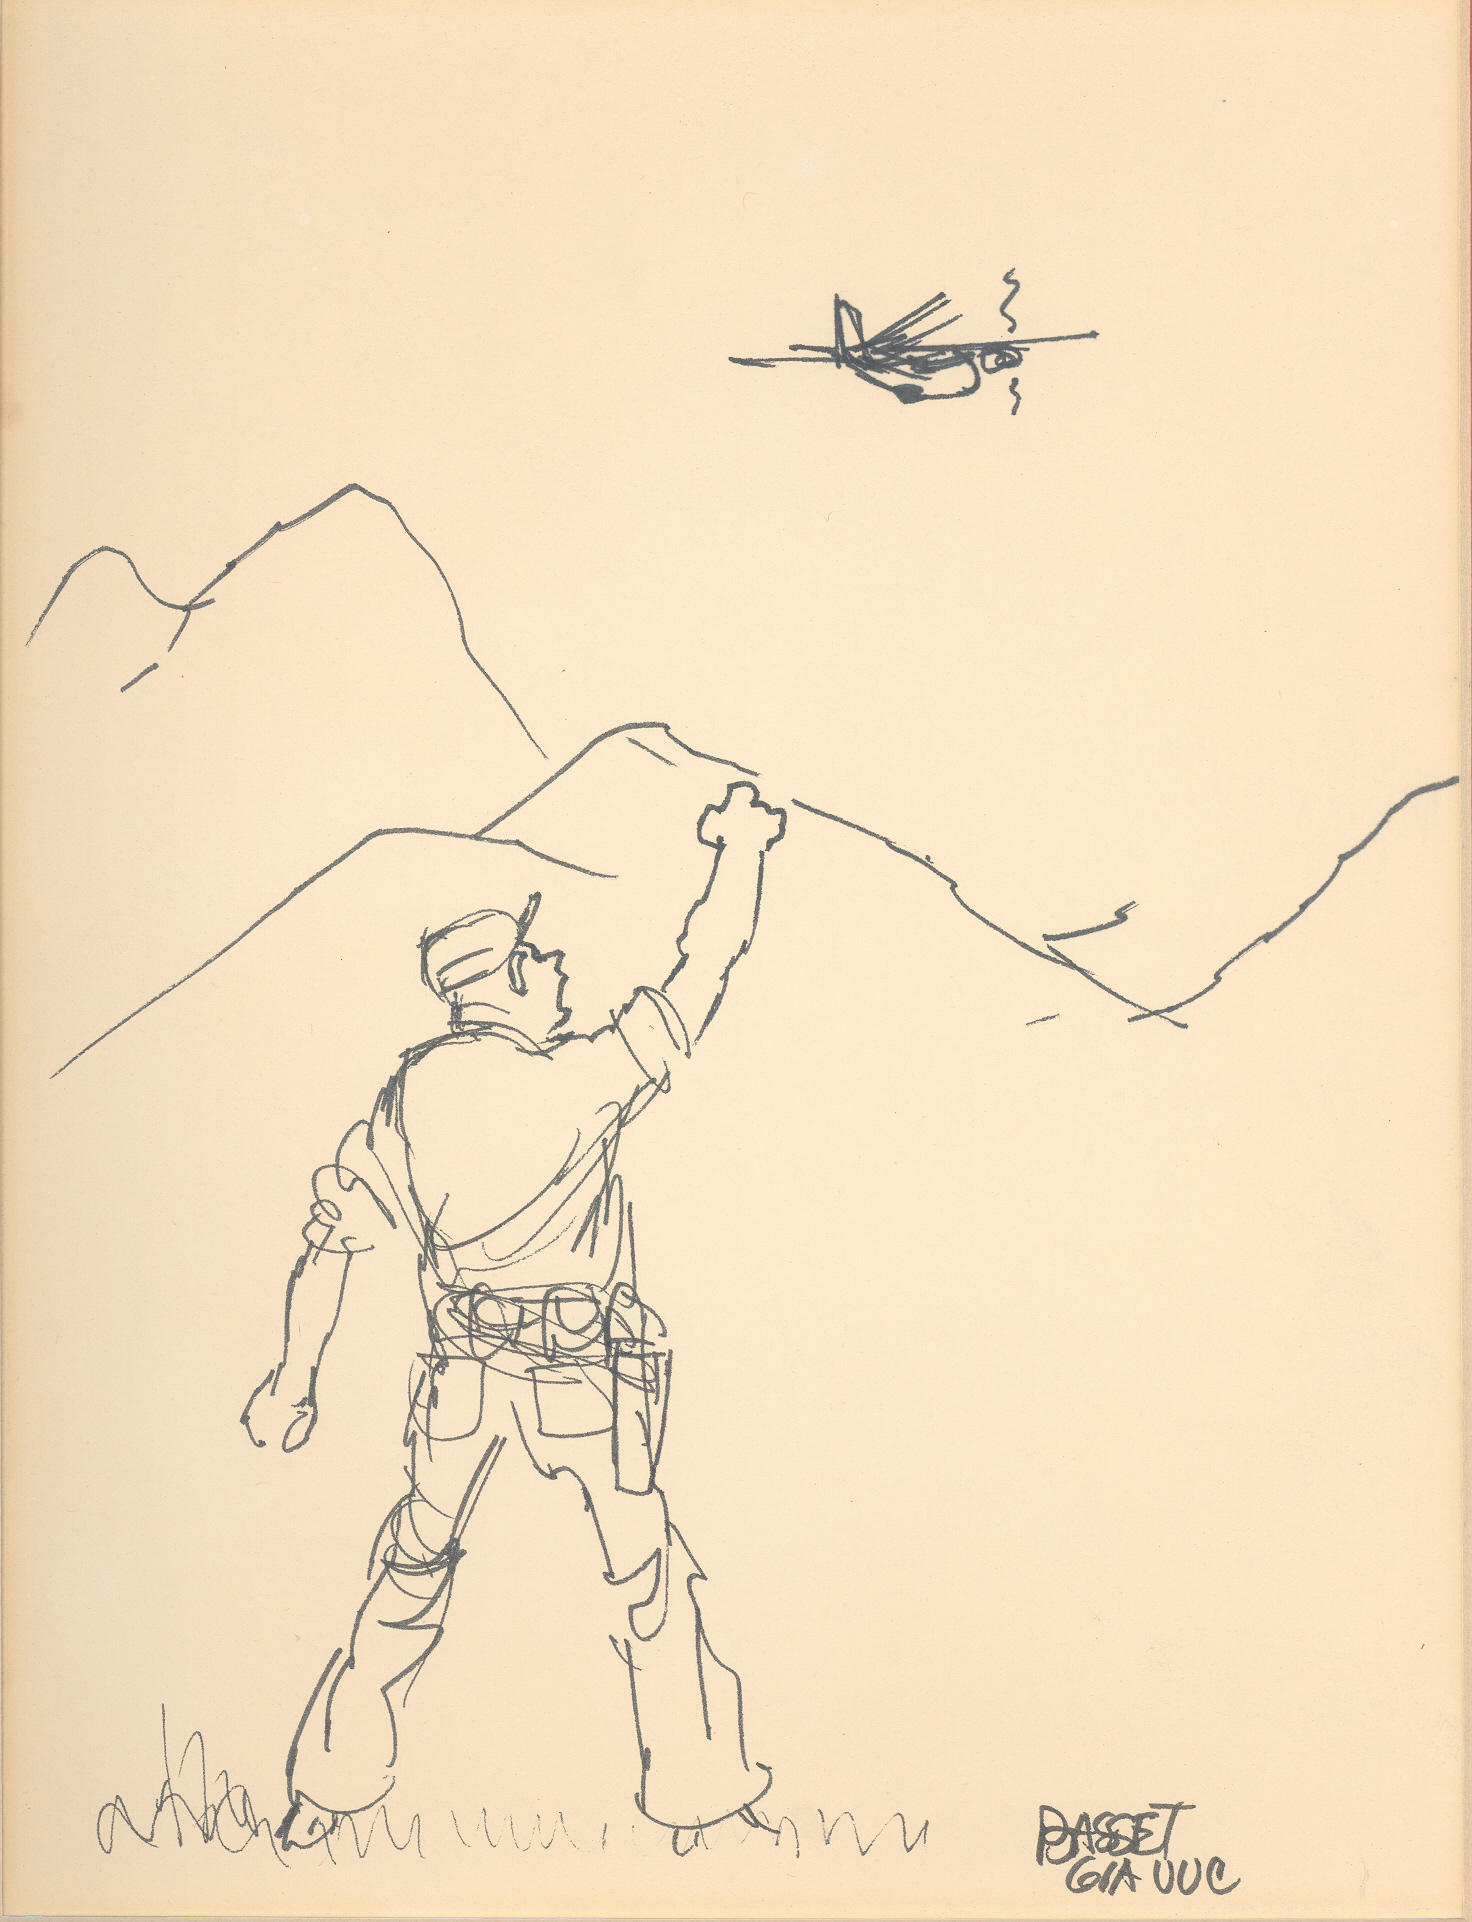 A Cartoonist's View of the Vietnam War - War on the Rocks